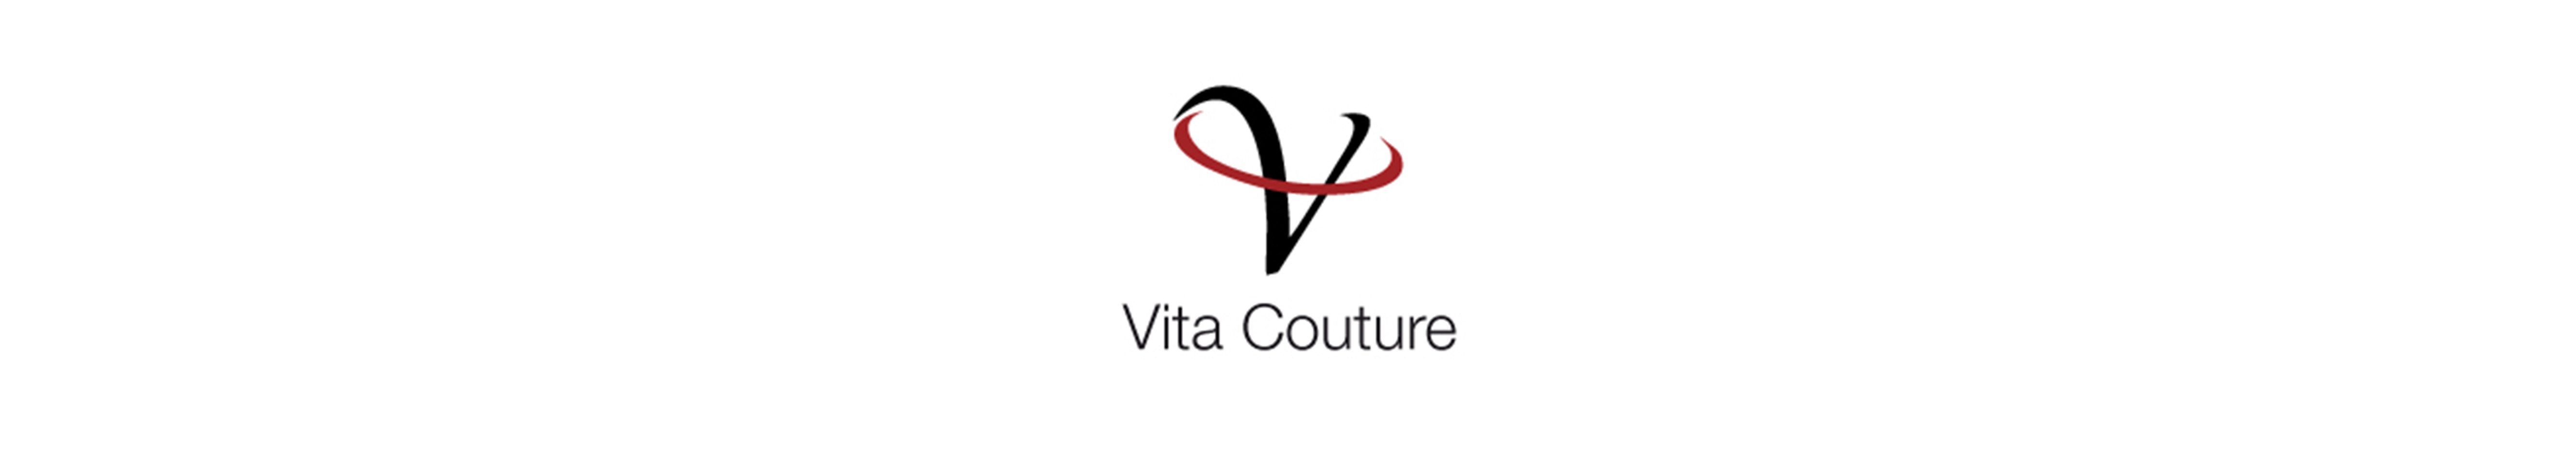 Vita Couture